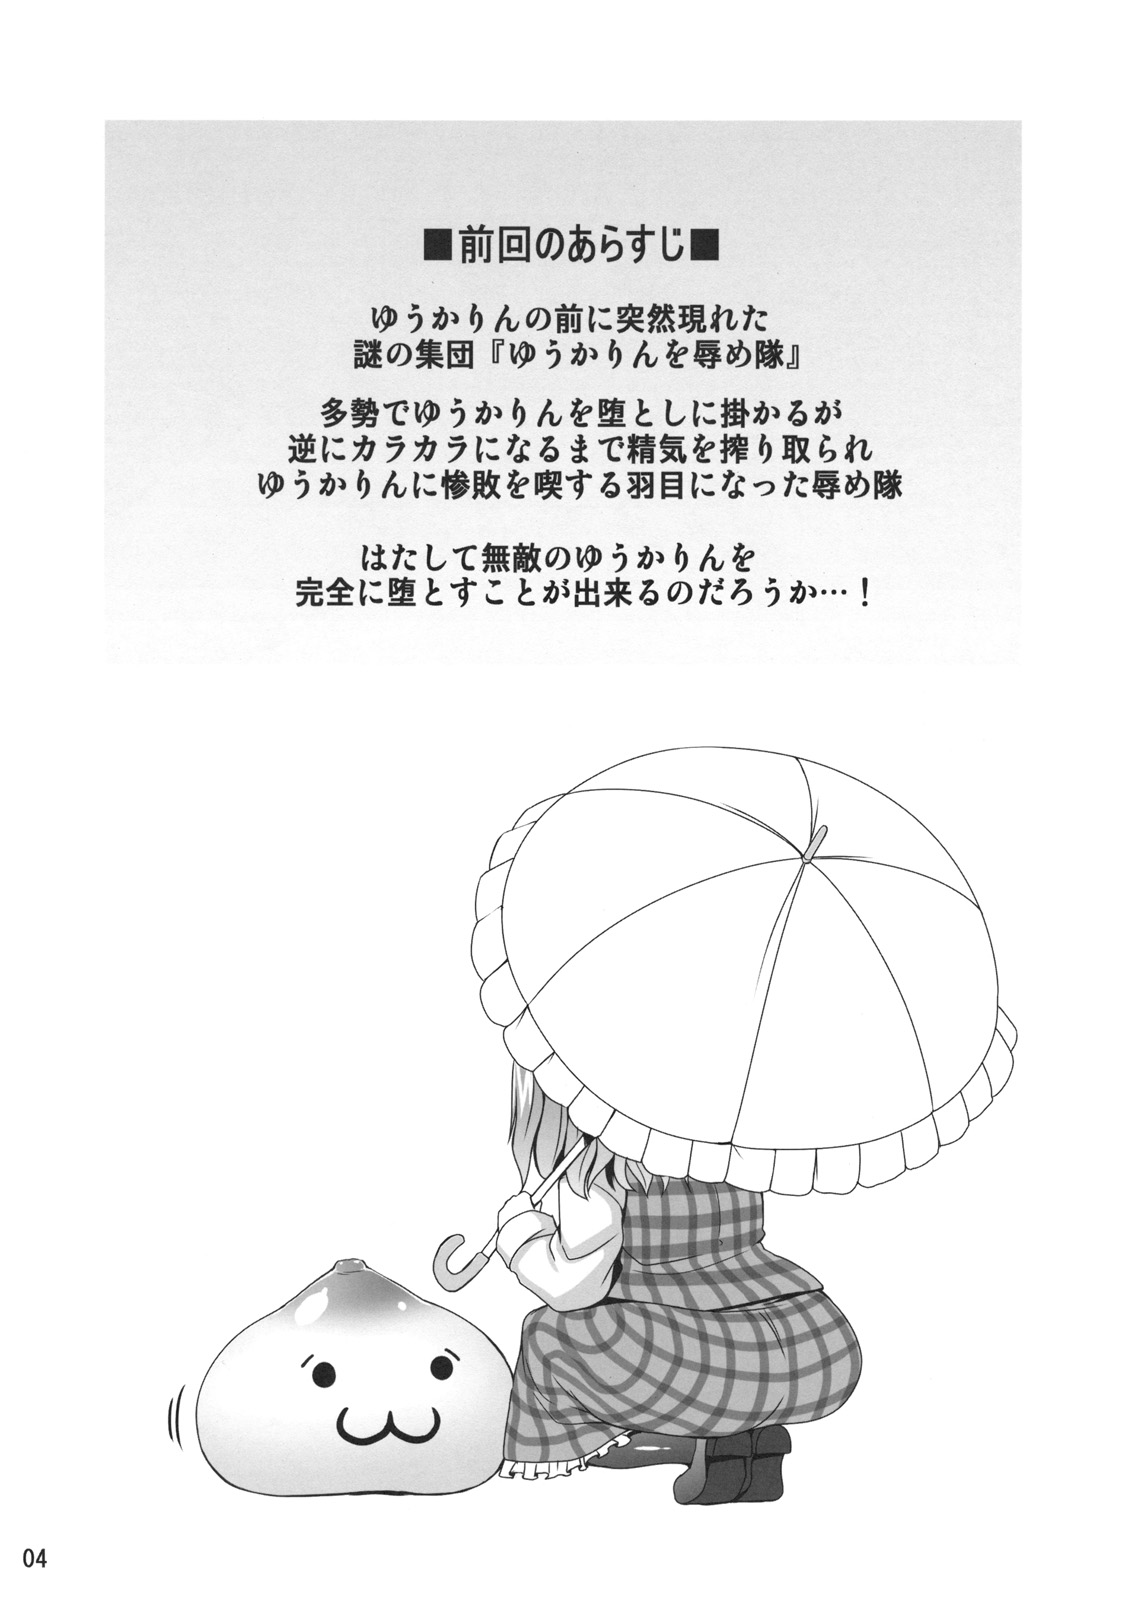 (Reitaisai 8) [Nounai Ekijiru (Somejima)] Himawari no Hiyashi (Touhou Project) (例大祭8) [脳内液汁 (ソメジマ)] 向日葵の肥やし (東方)